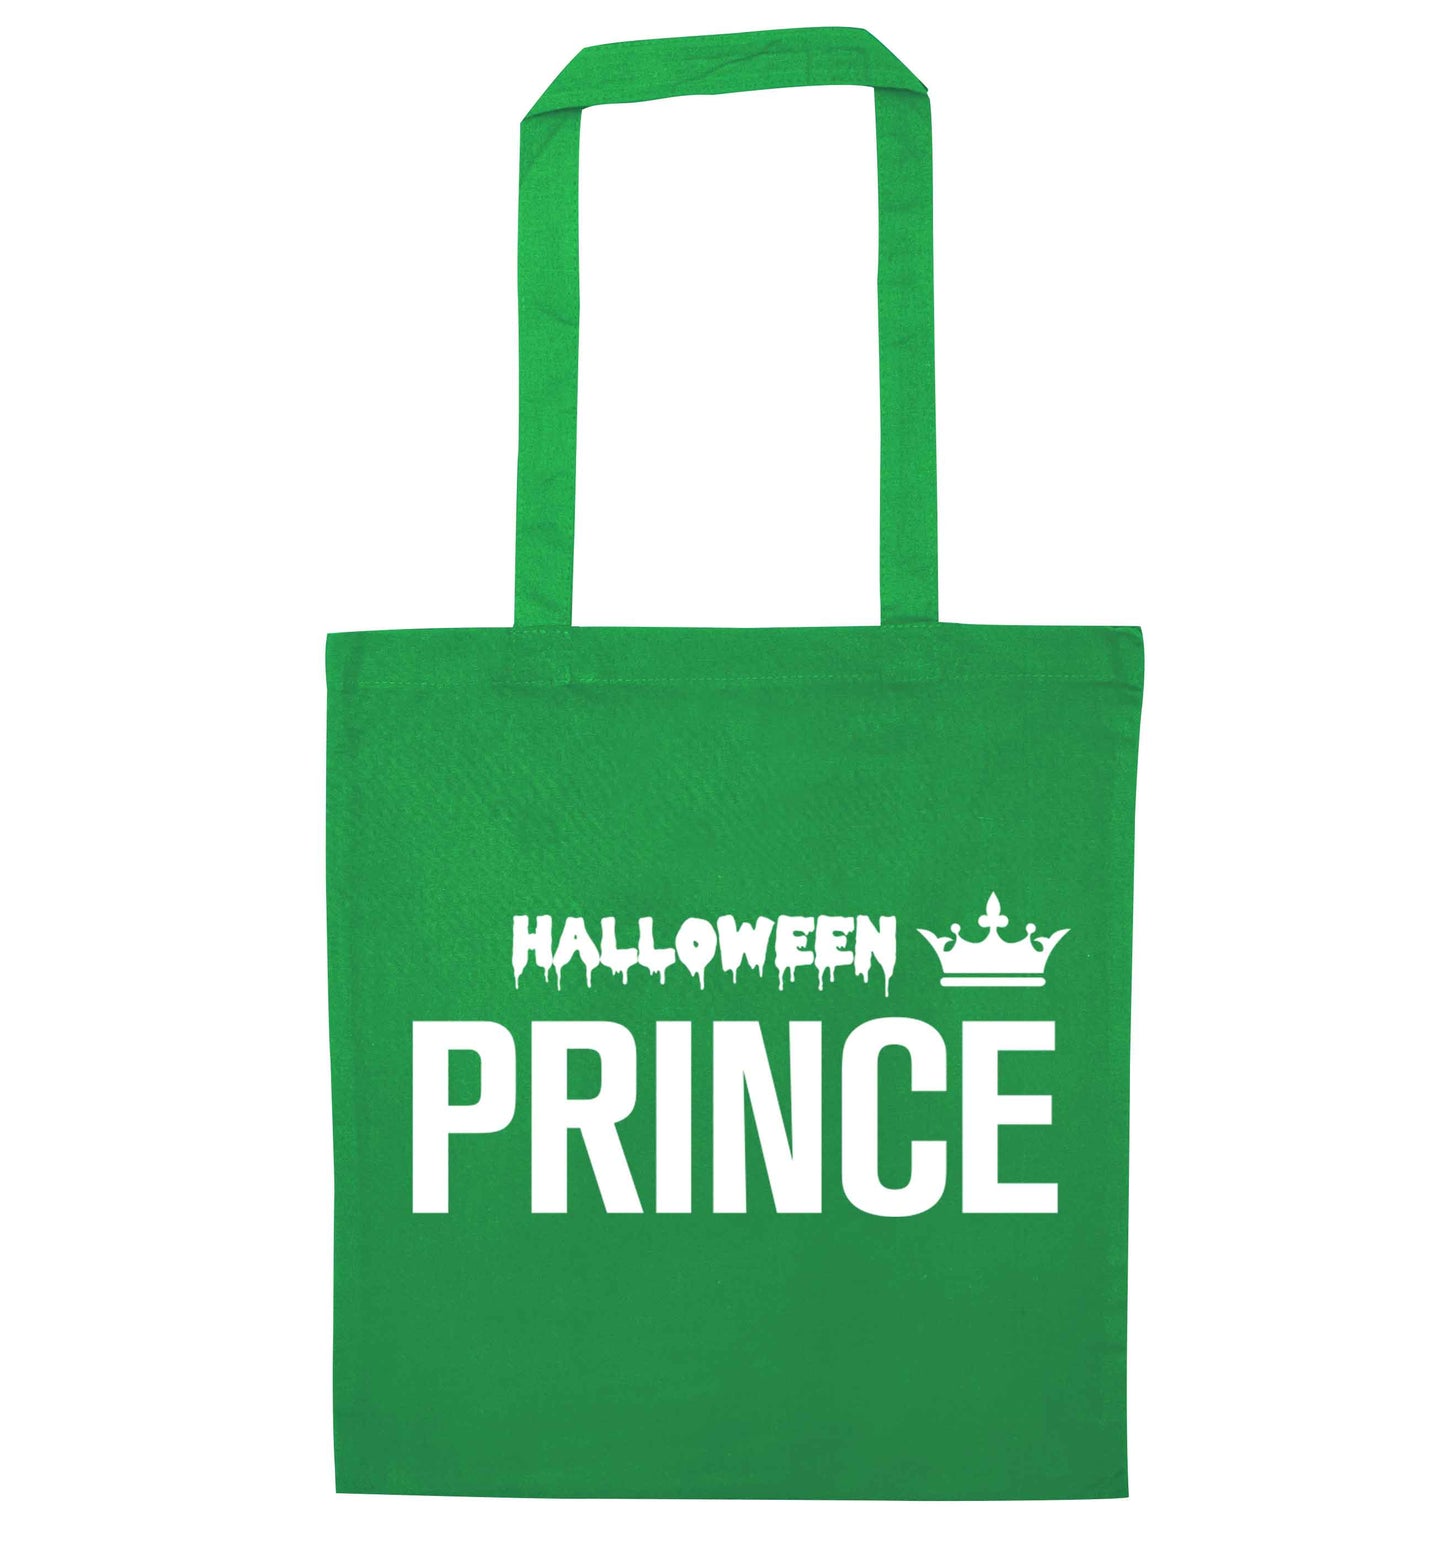 Halloween prince green tote bag